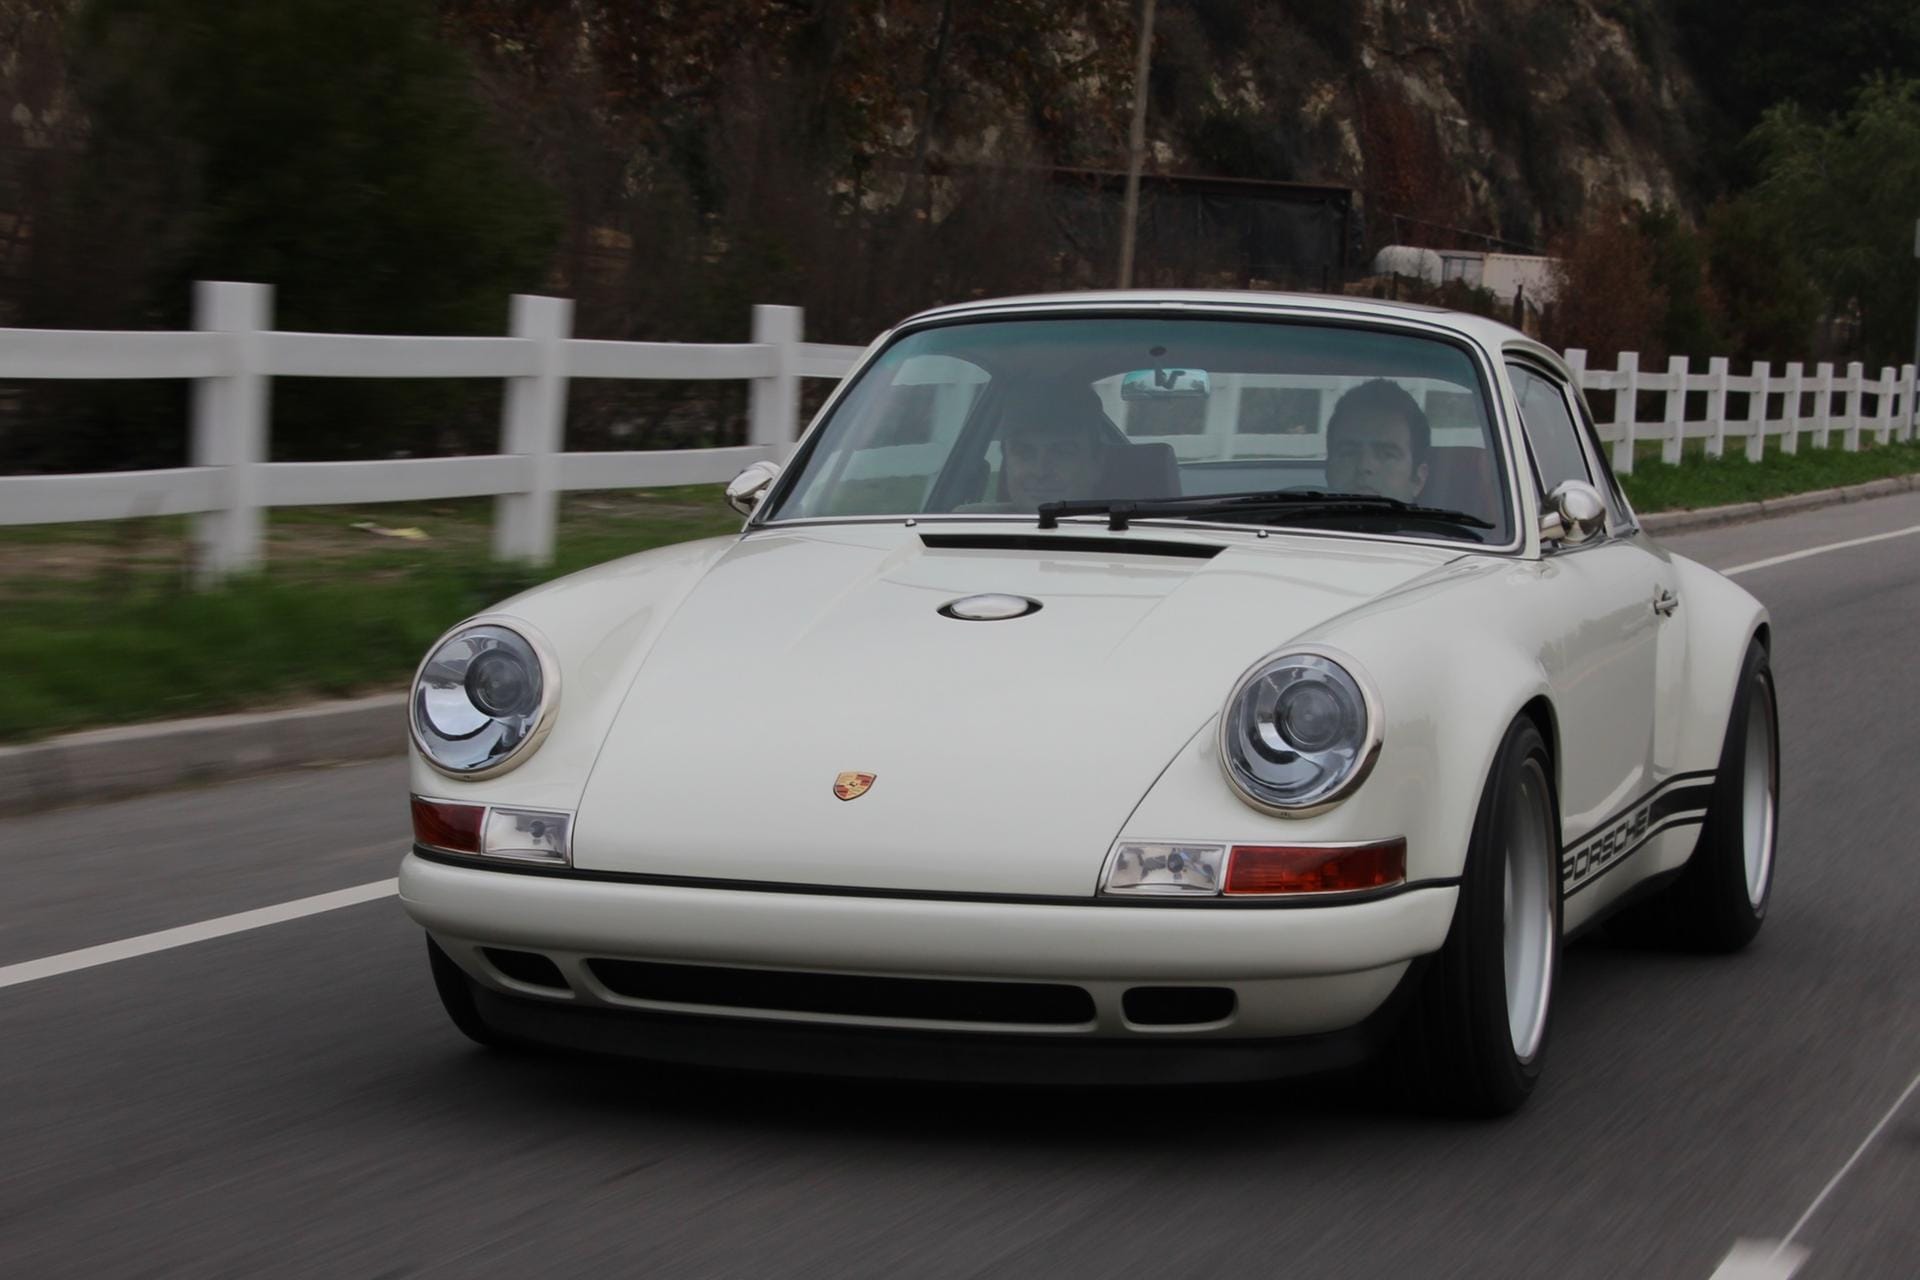 Ein großer der Umbau-Szene ist die Firma Singer. Hier bekommen mittelalte Porsche 911 einen coolen 70er-Jahre-Look verpasst.